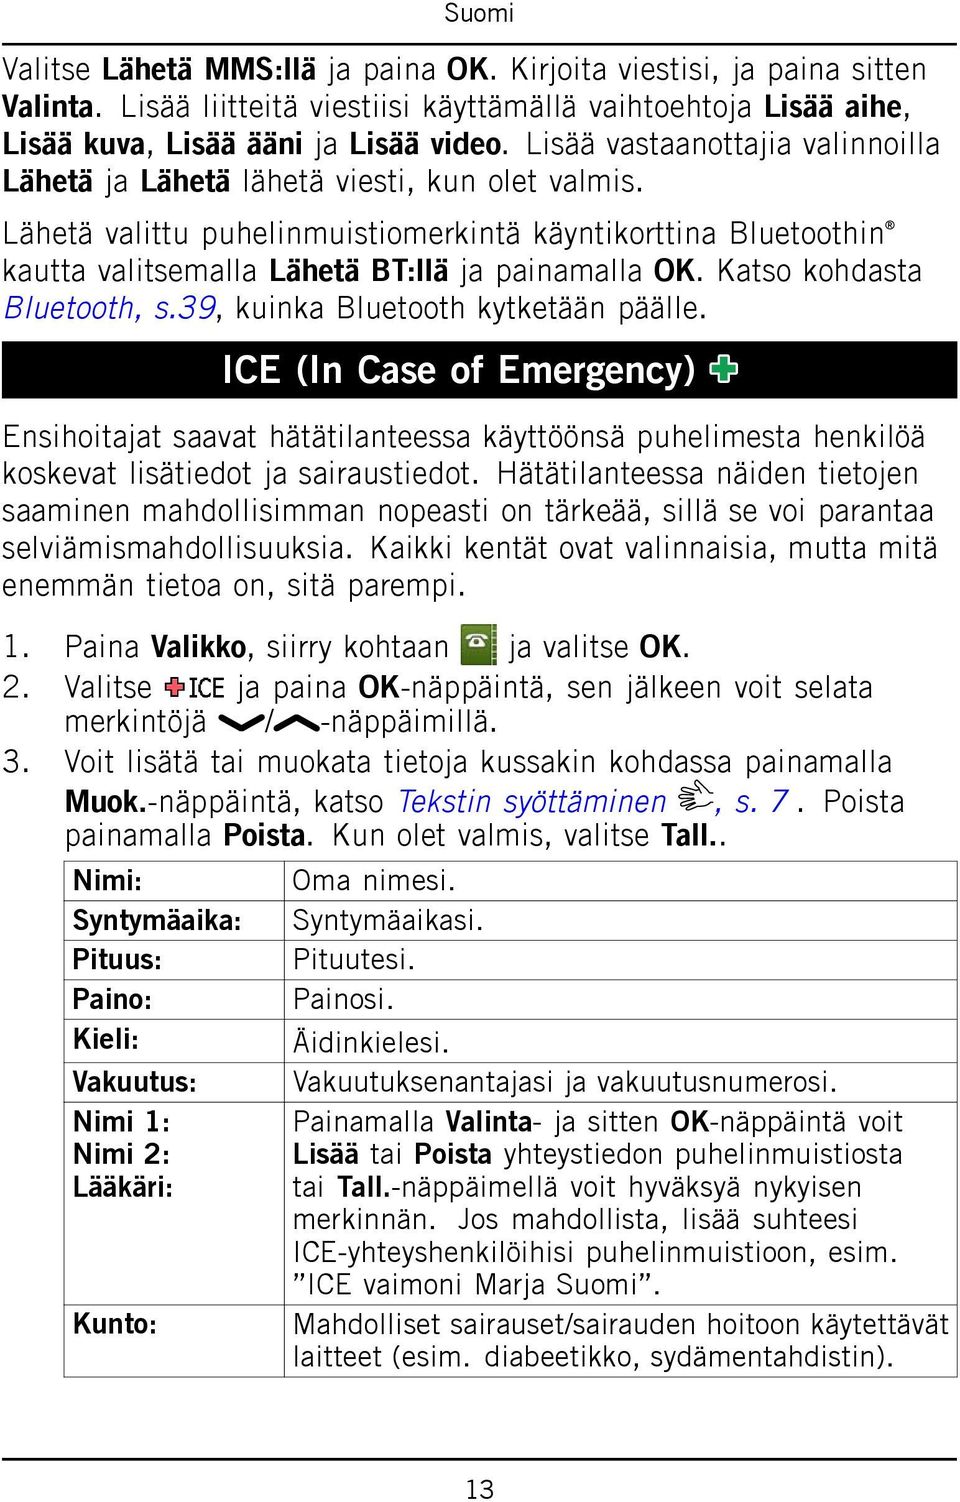 Katso kohdasta Bluetooth, s.39, kuinka Bluetooth kytketään päälle. ICE (In Case of Emergency) Ensihoitajat saavat hätätilanteessa käyttöönsä puhelimesta henkilöä koskevat lisätiedot ja sairaustiedot.